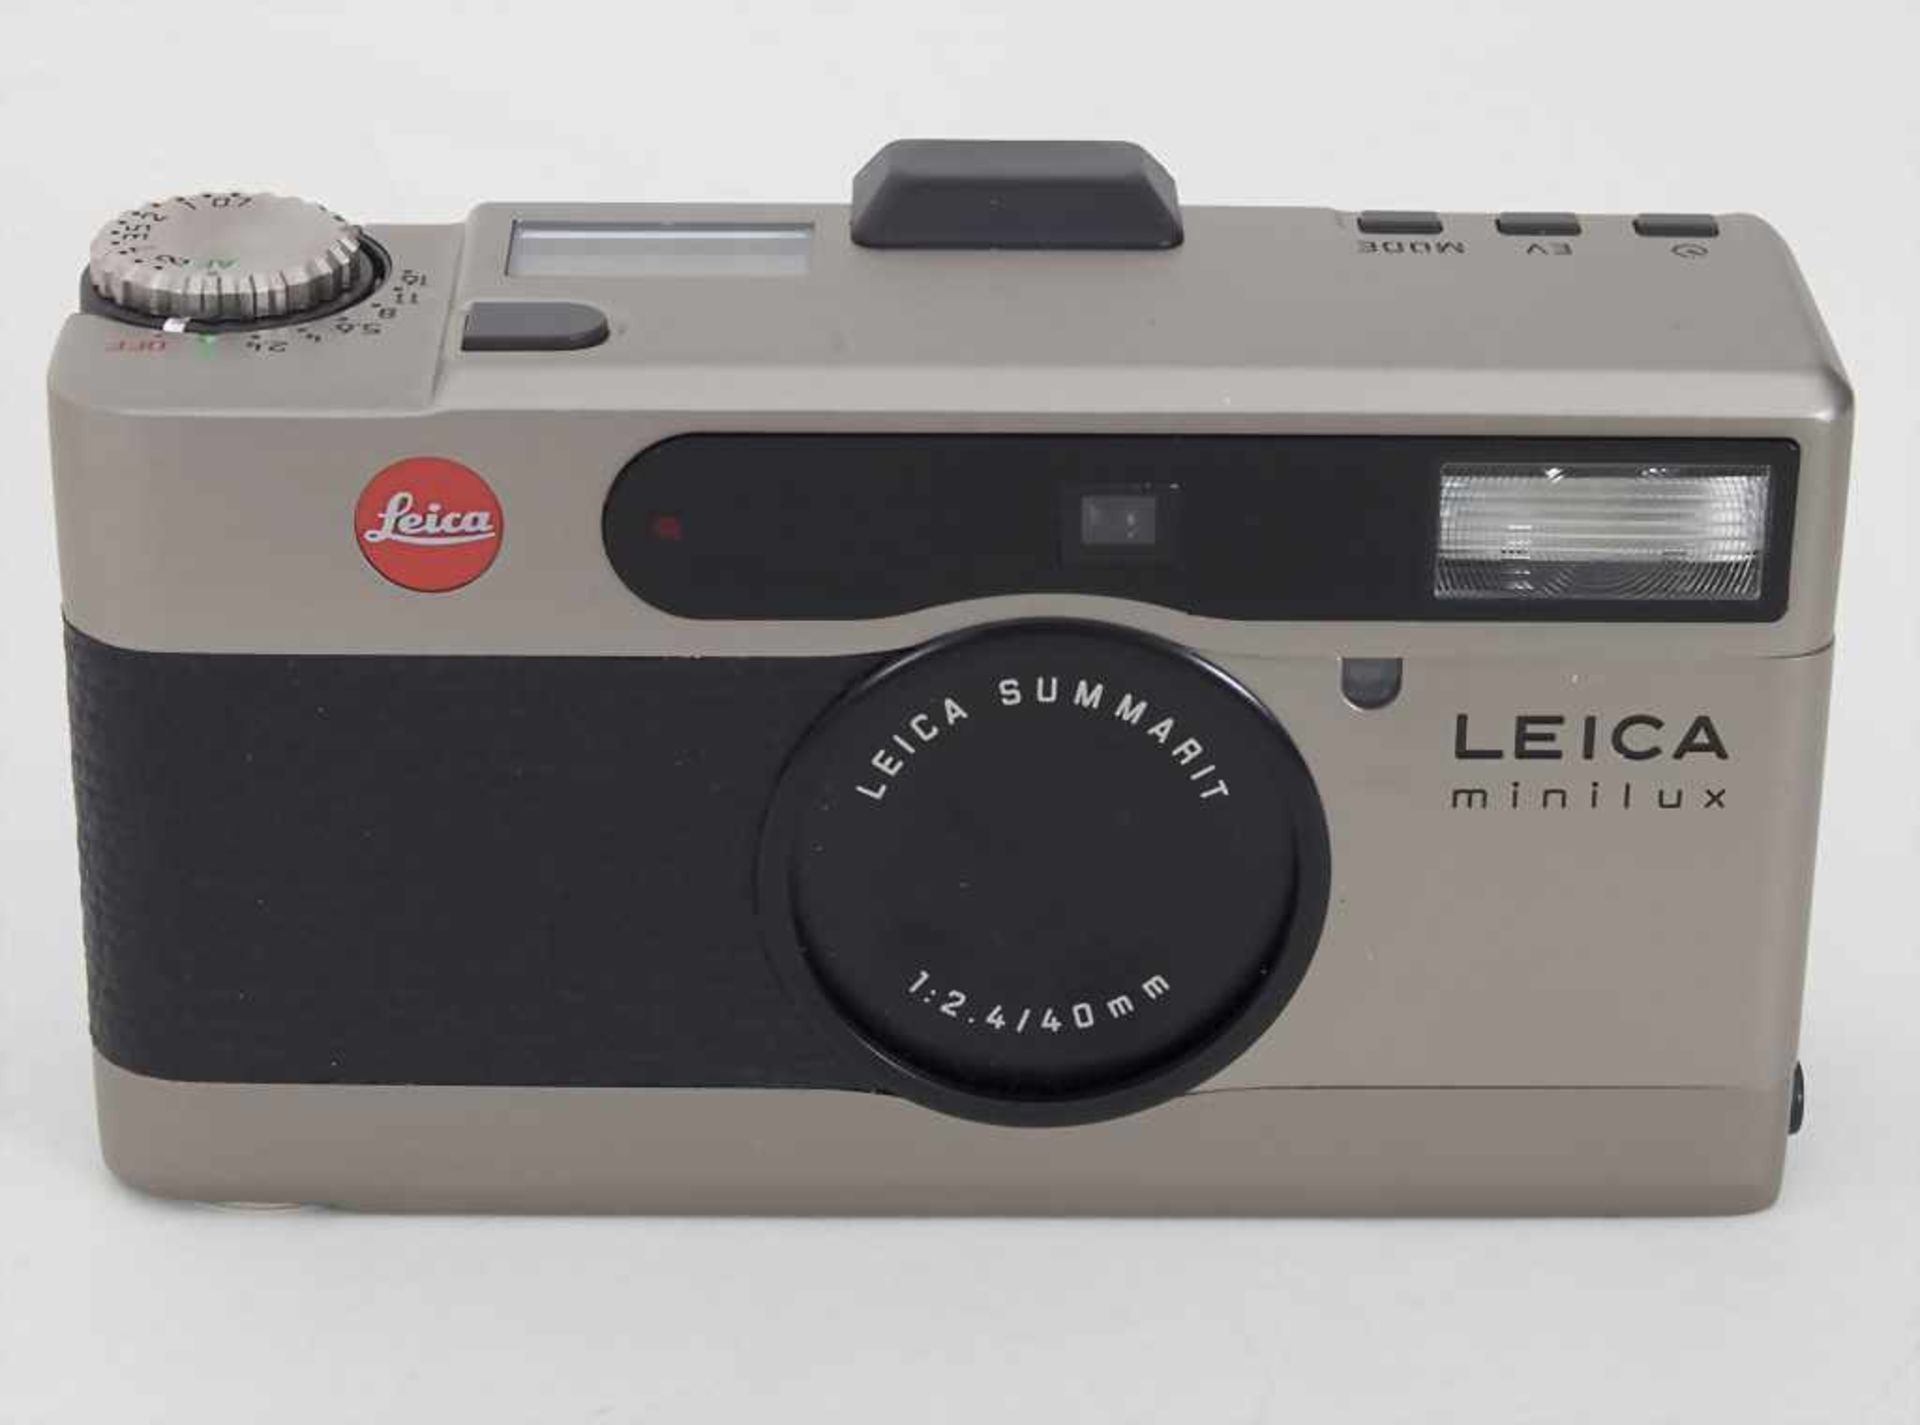 Leica Minilux Summarit f 2,4/40 mmZubehör: Original-Tasche, Garantiekarte (Kaufdatum 1996), - Bild 2 aus 5